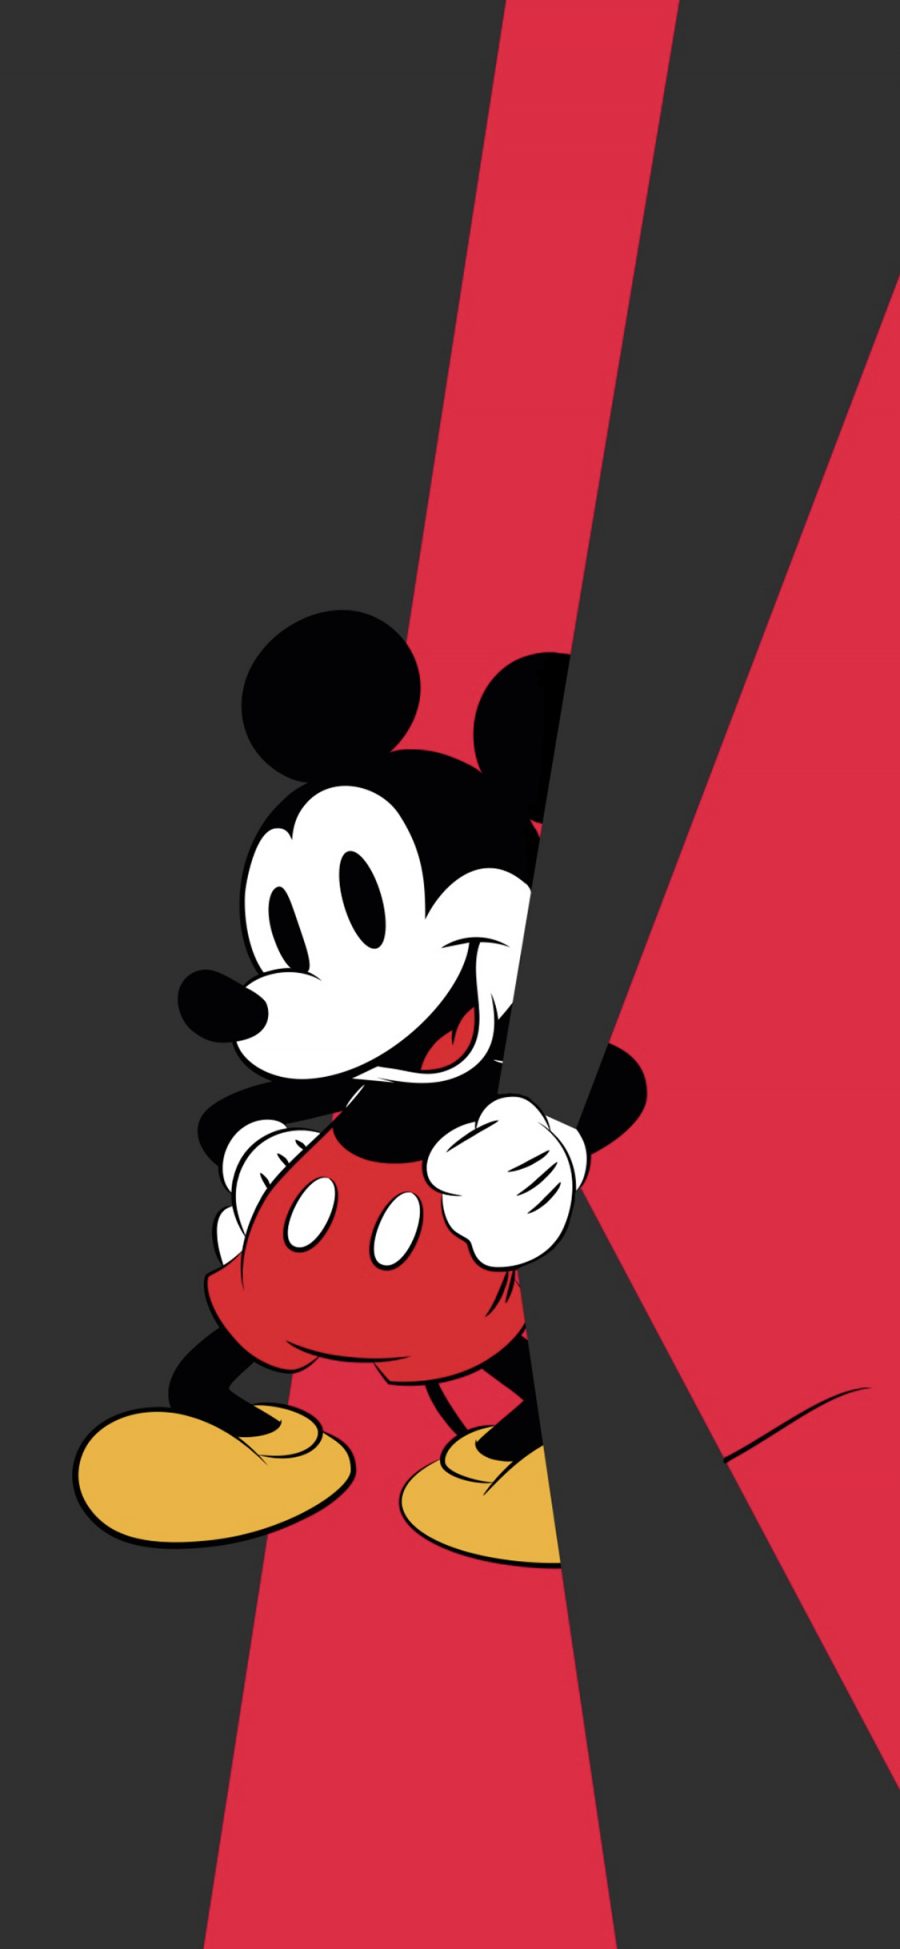 [2436×1125]米老鼠 迪士尼 米奇 动画 苹果手机动漫壁纸图片